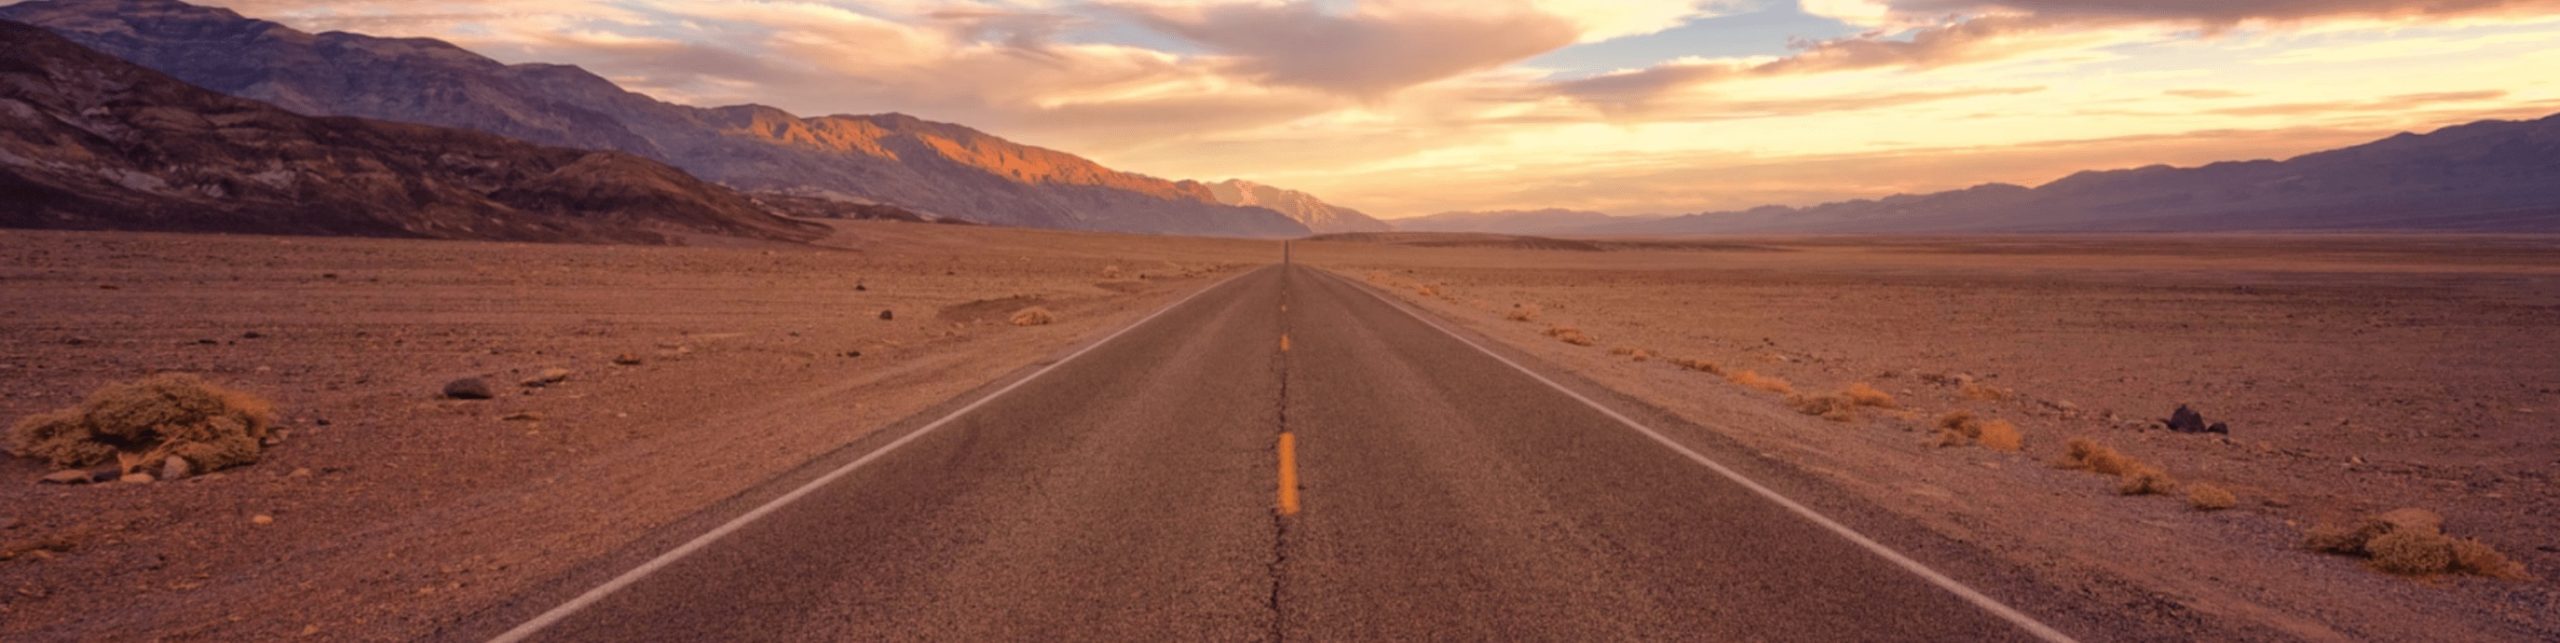 wide open desert road